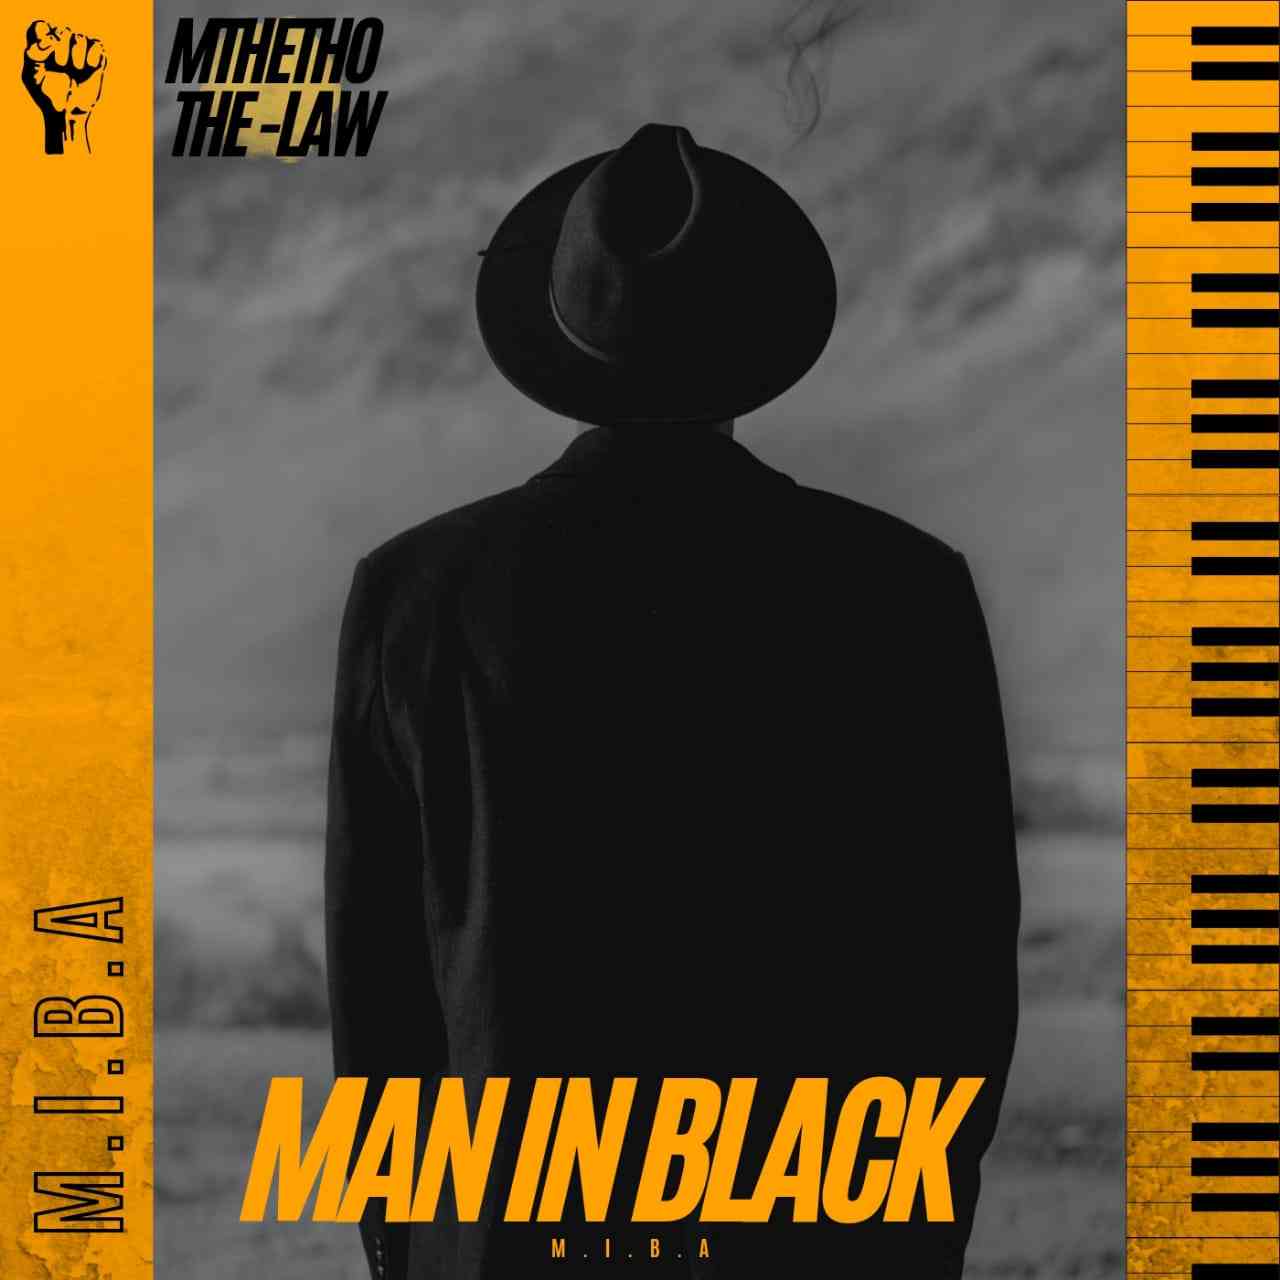 Mthetho The-Law Man In Black Album